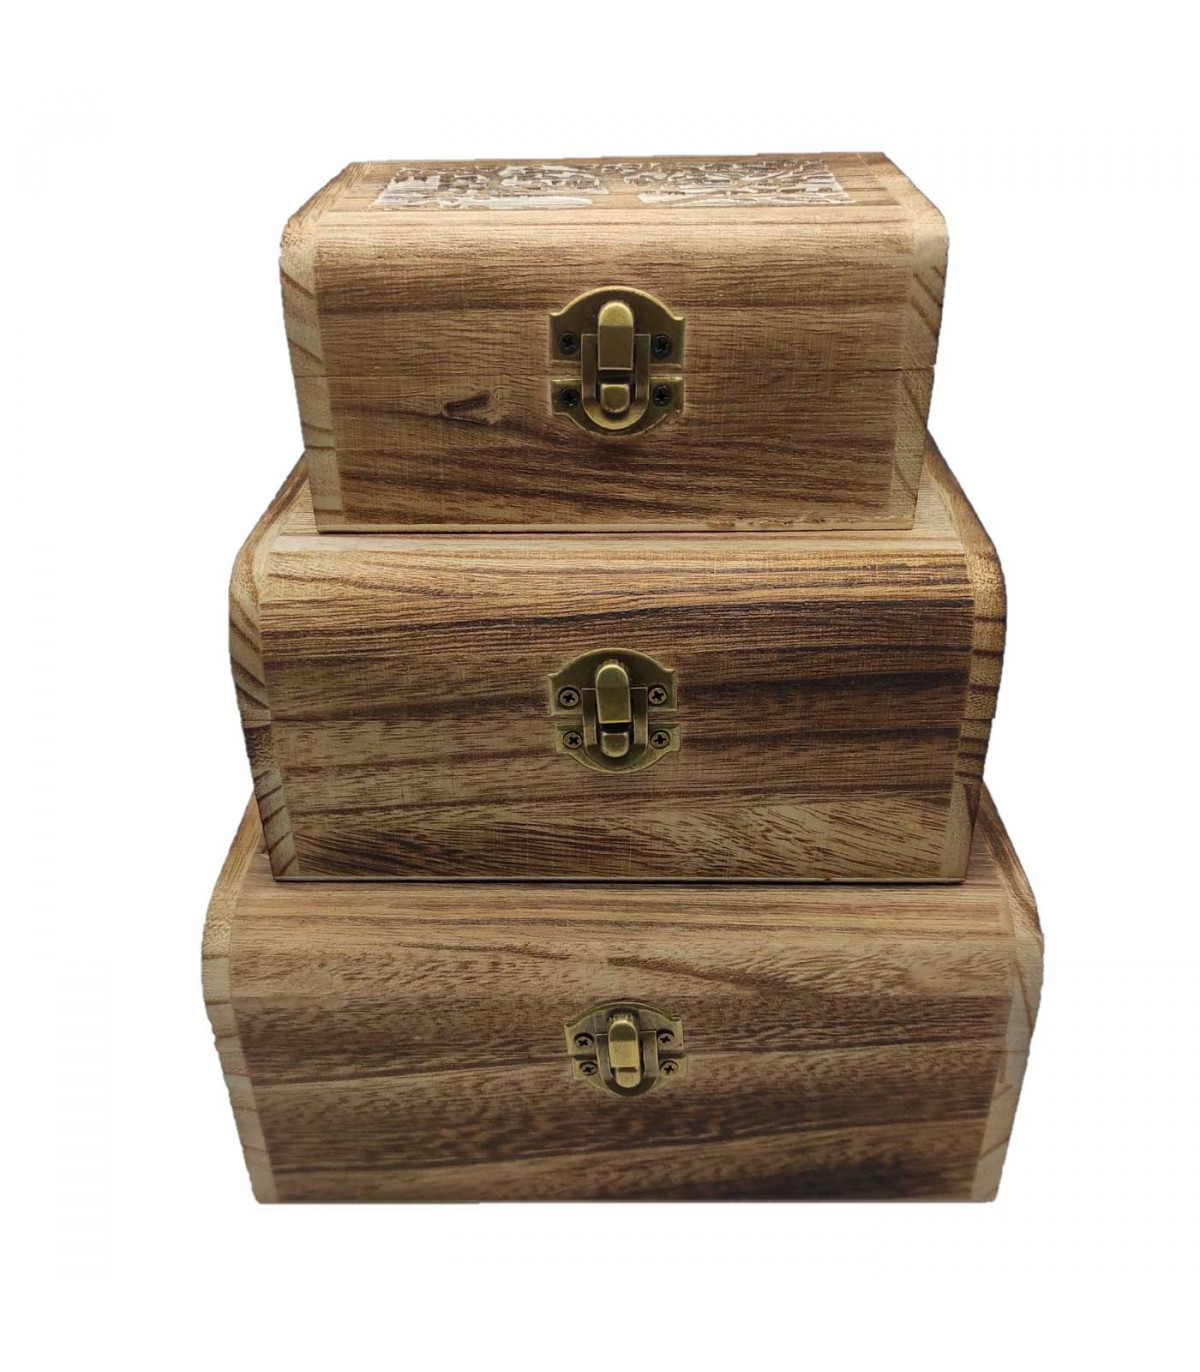 Cajas de Metal - Compra cajas Metálicas Decorativas Originales